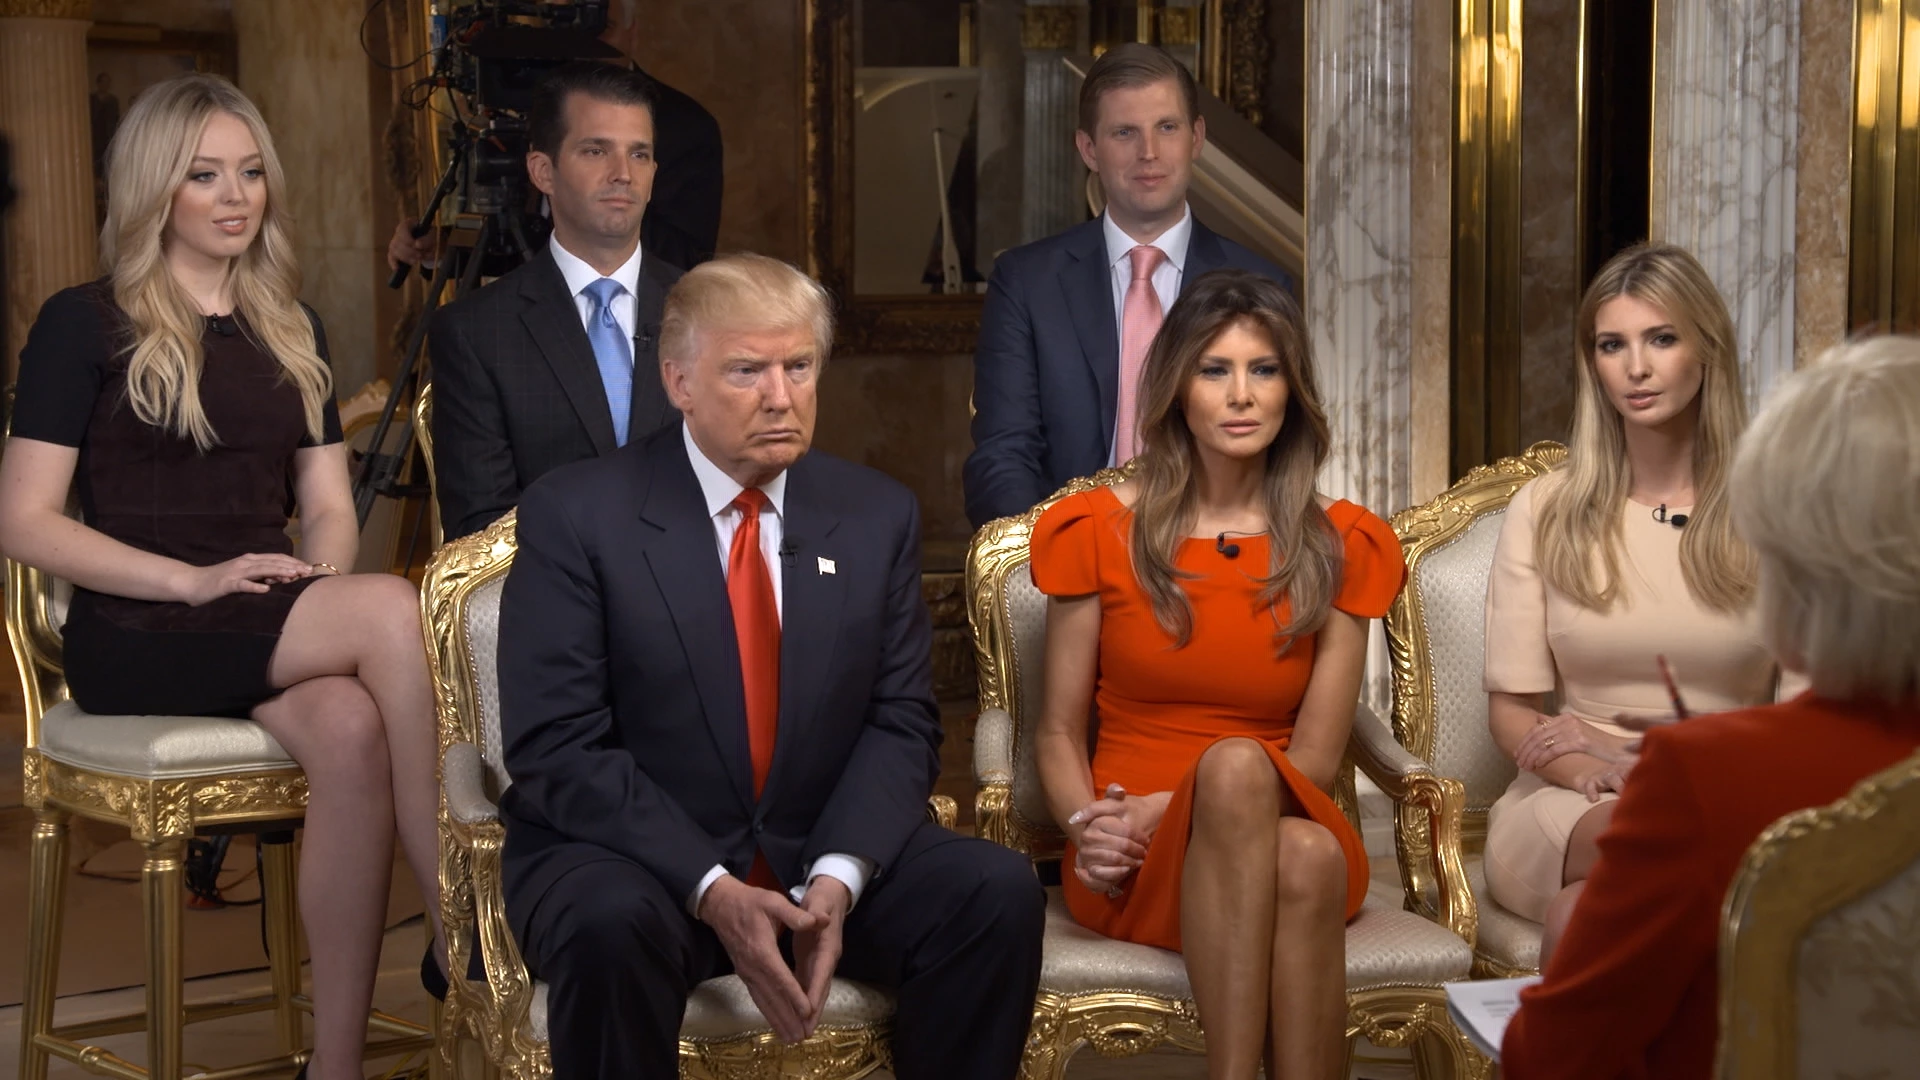 A correspondente do 60 MINUTES Lesley Stahl entrevista o presidente eleito Donald J. Trump e sua família na casa deles em Manhattan, em 11 de novembro de 2016.